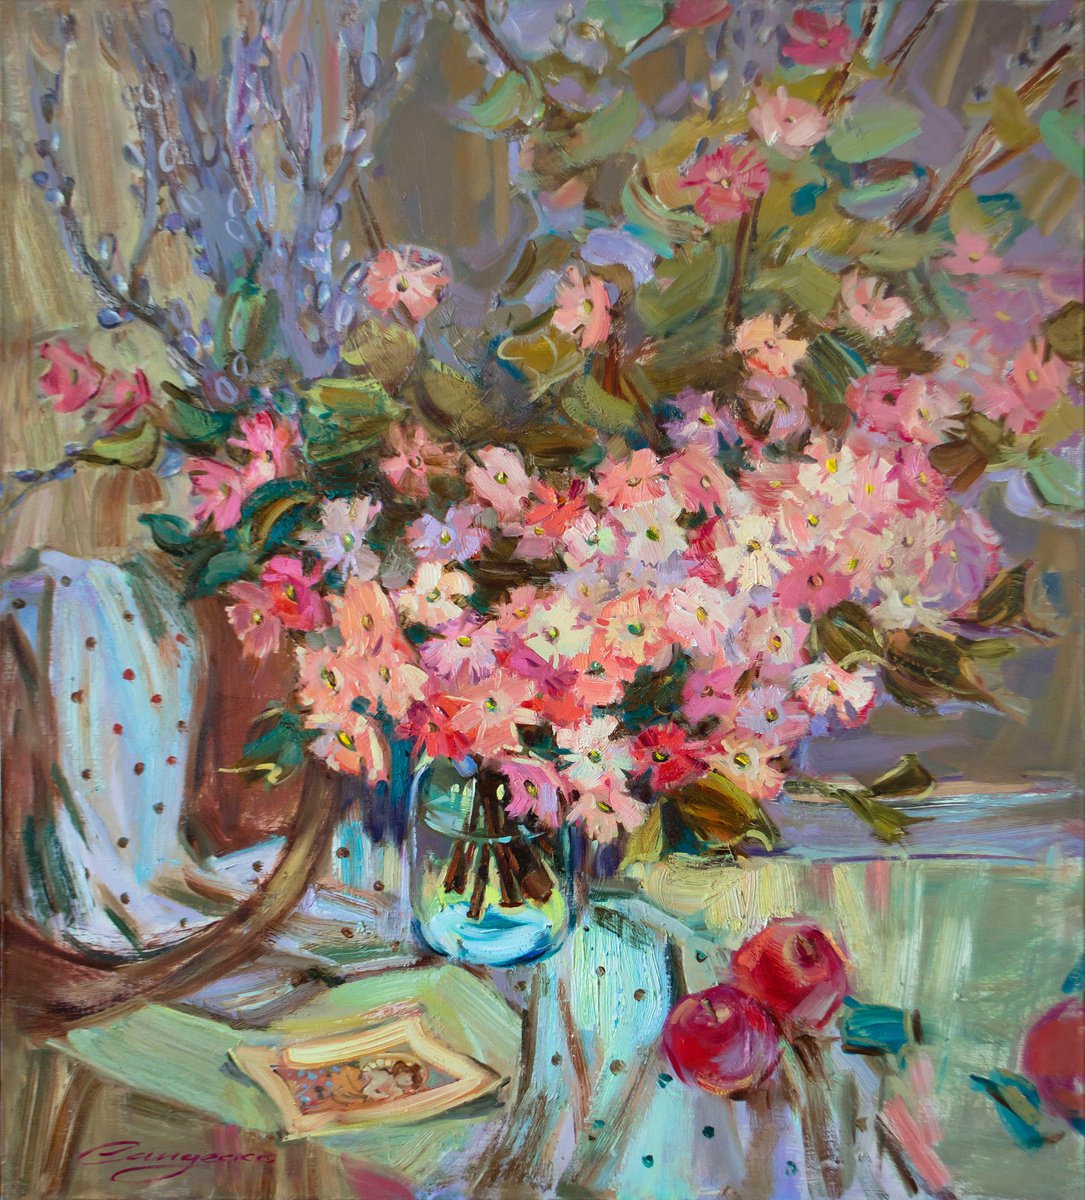 Bloom by Ksenia Sandesko